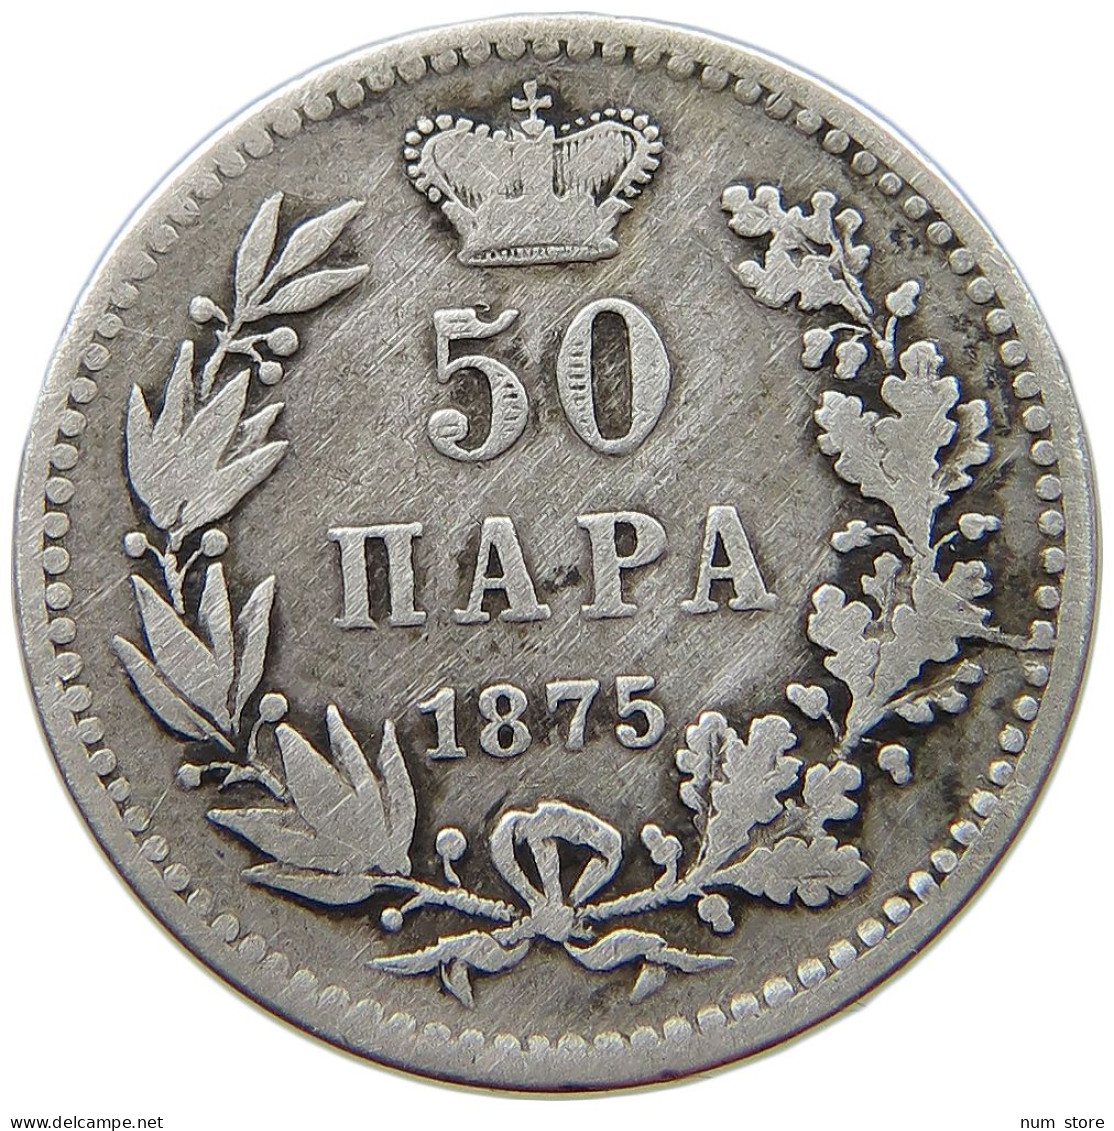 SERBIA 50 PARA 1875 Milan Obrenovic IV. (1868-1882) #s074 0641 - Serbia